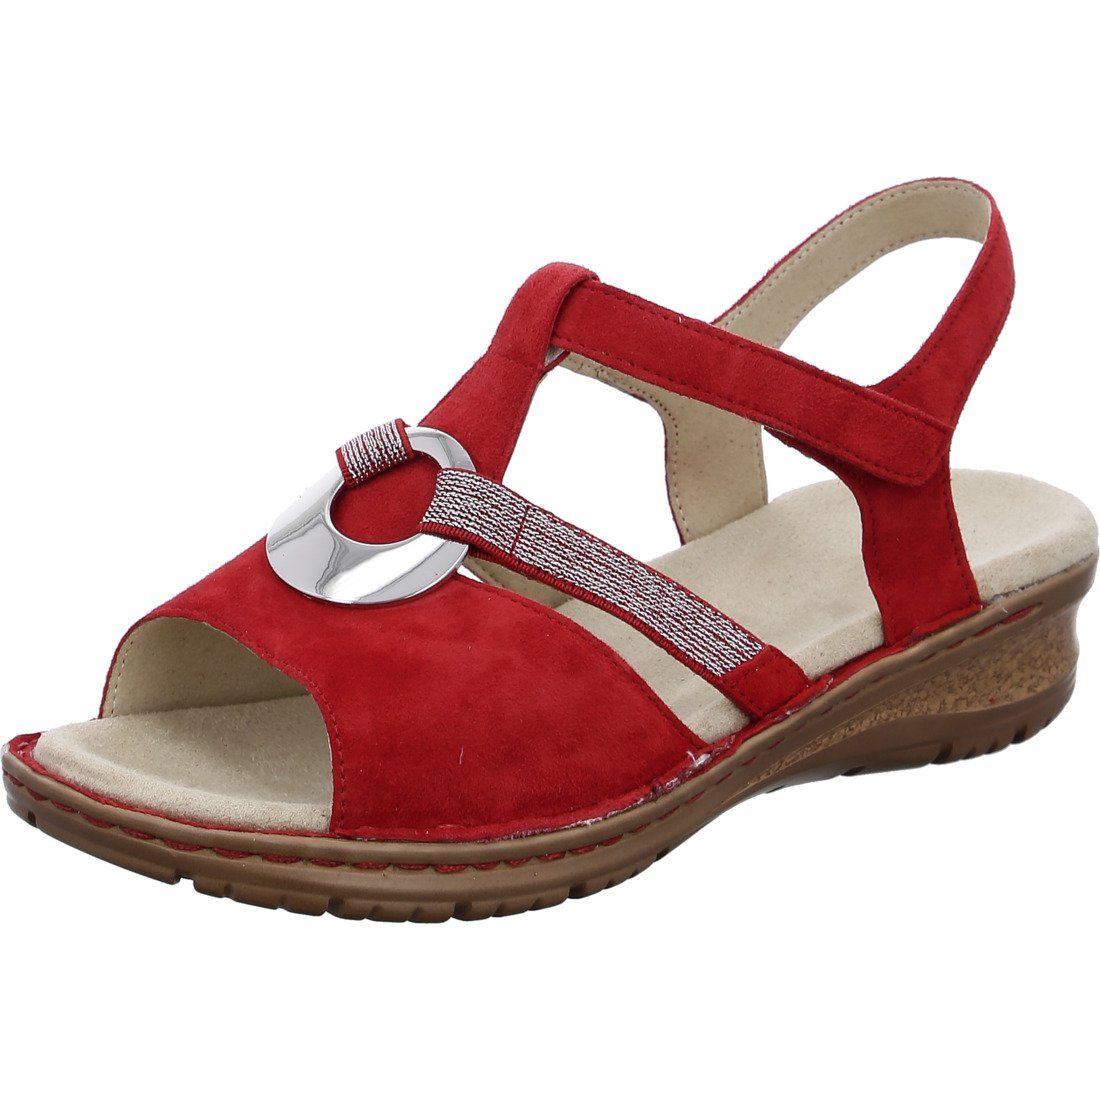 Ara Ara Schuhe, Sandalette Hawaii - Leder Damen Sandalette rot 045319